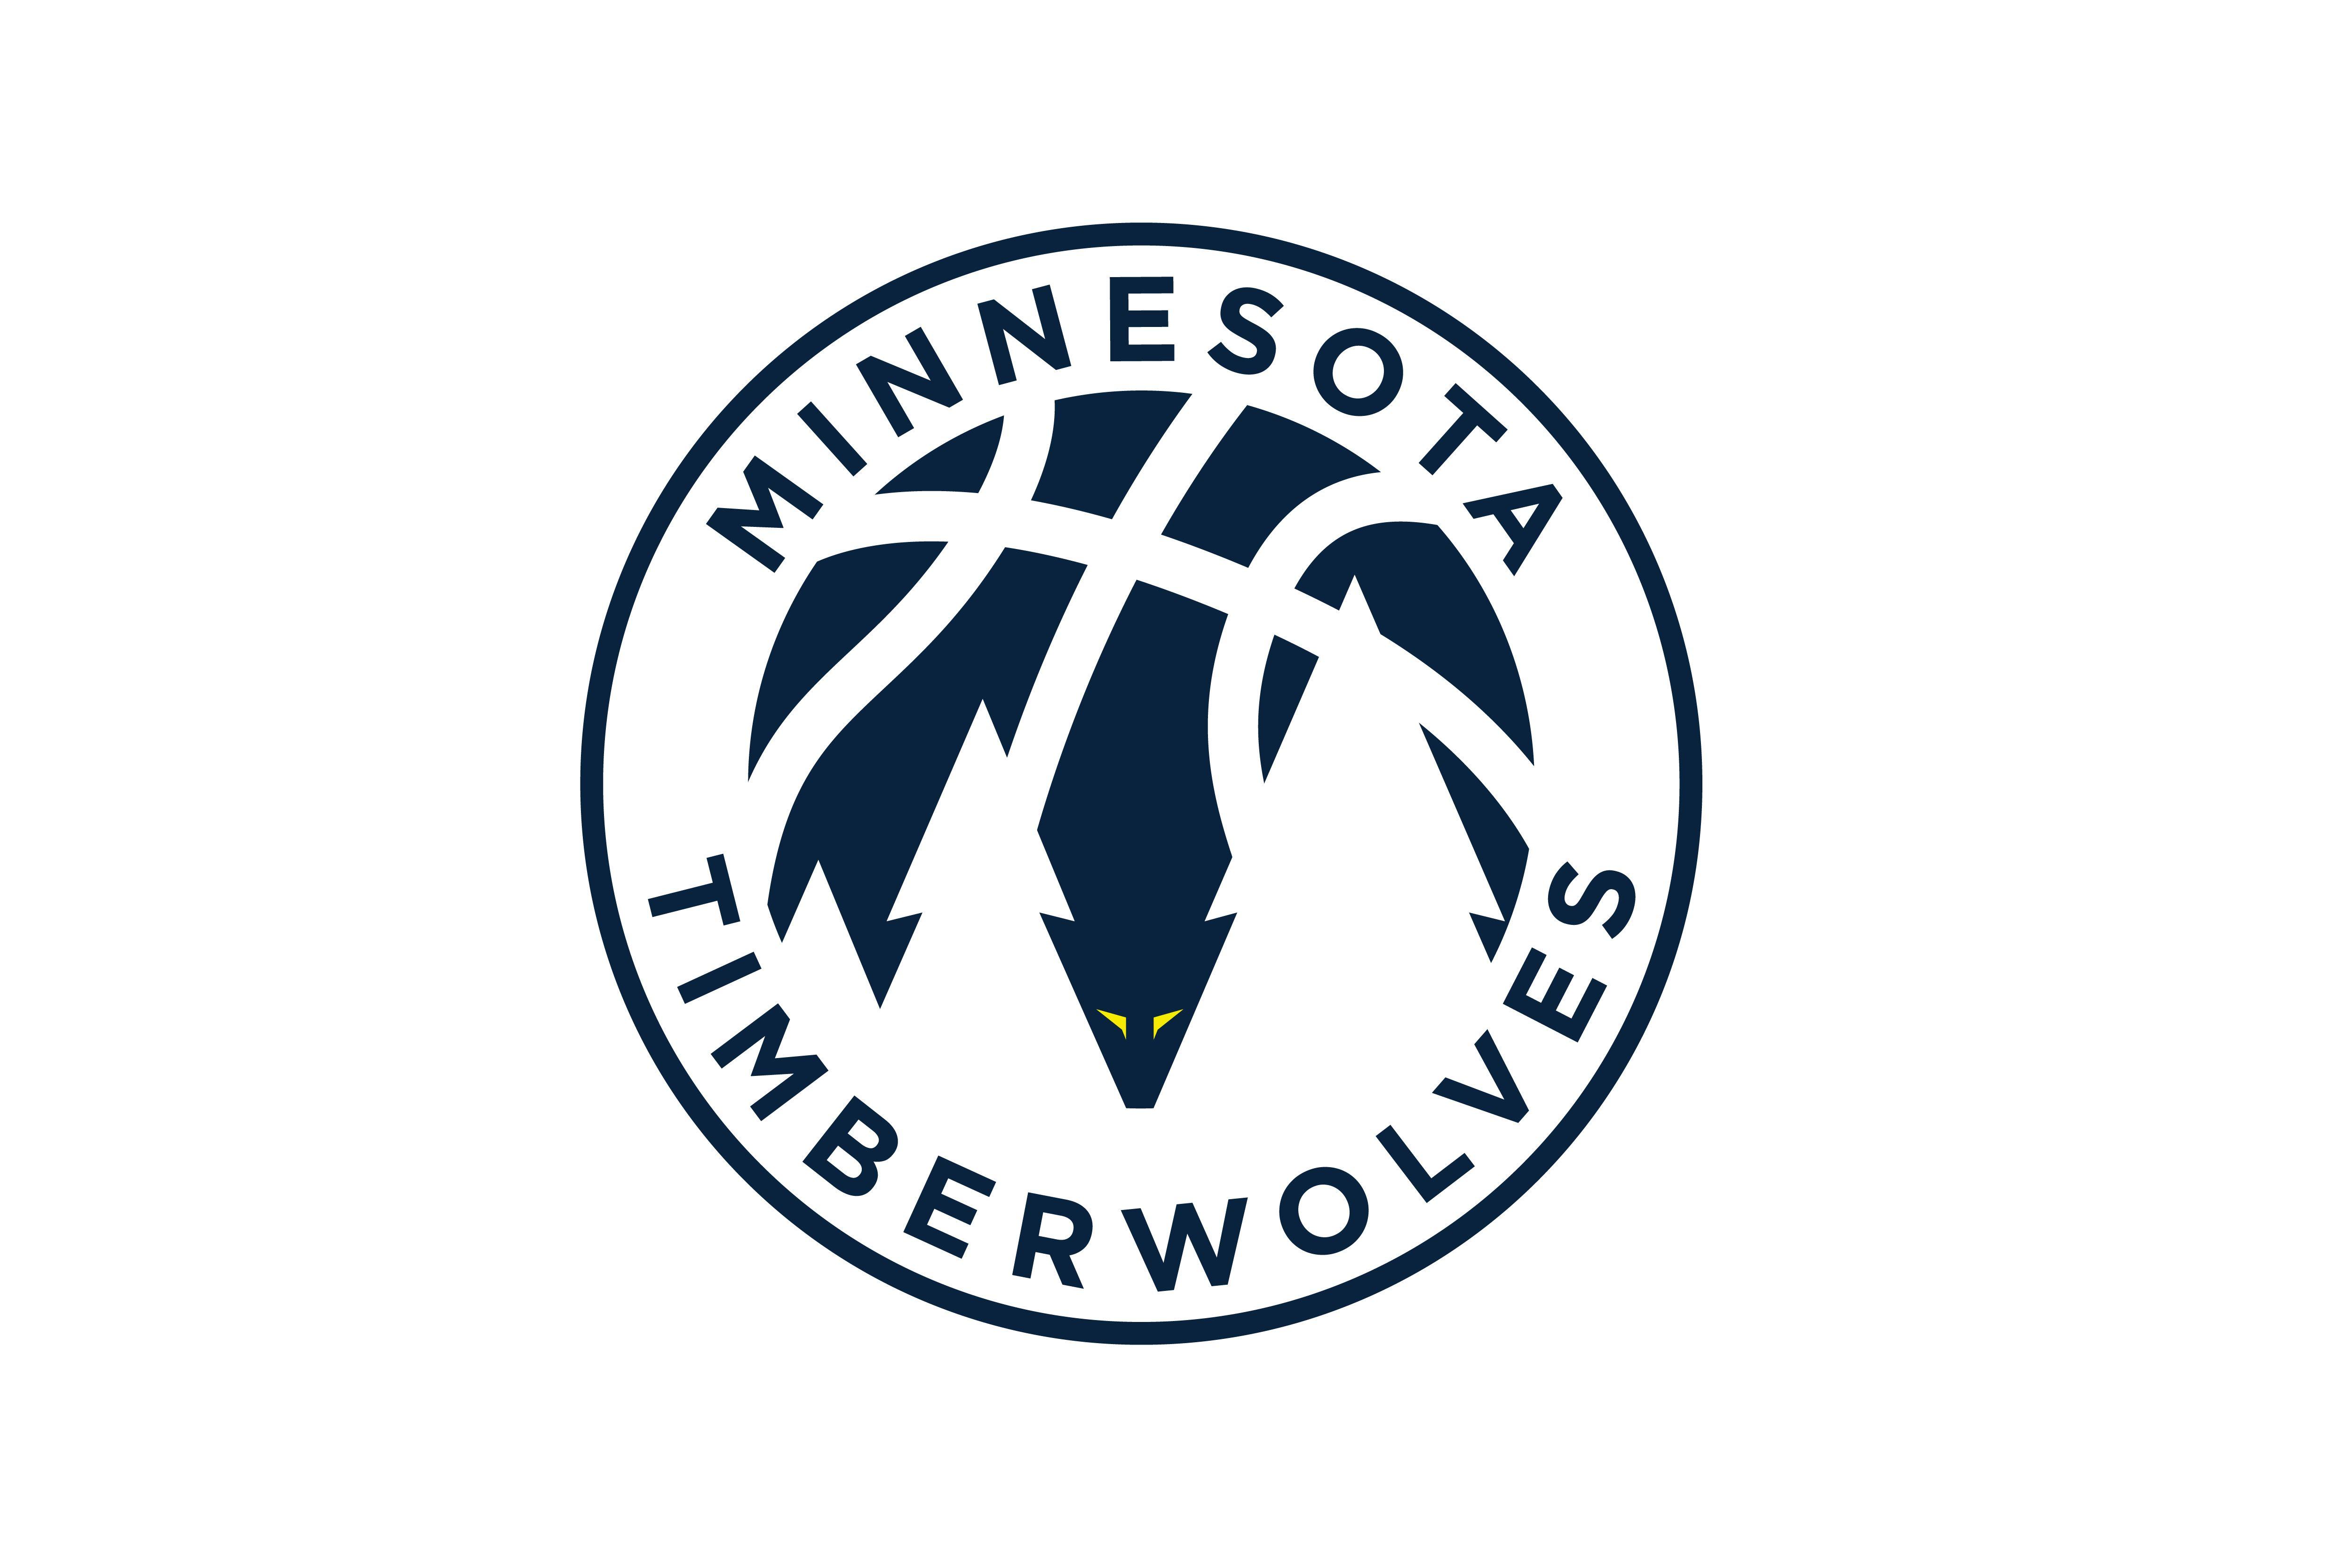 Twolves Logo - I rebranded the Timberwolves : nba